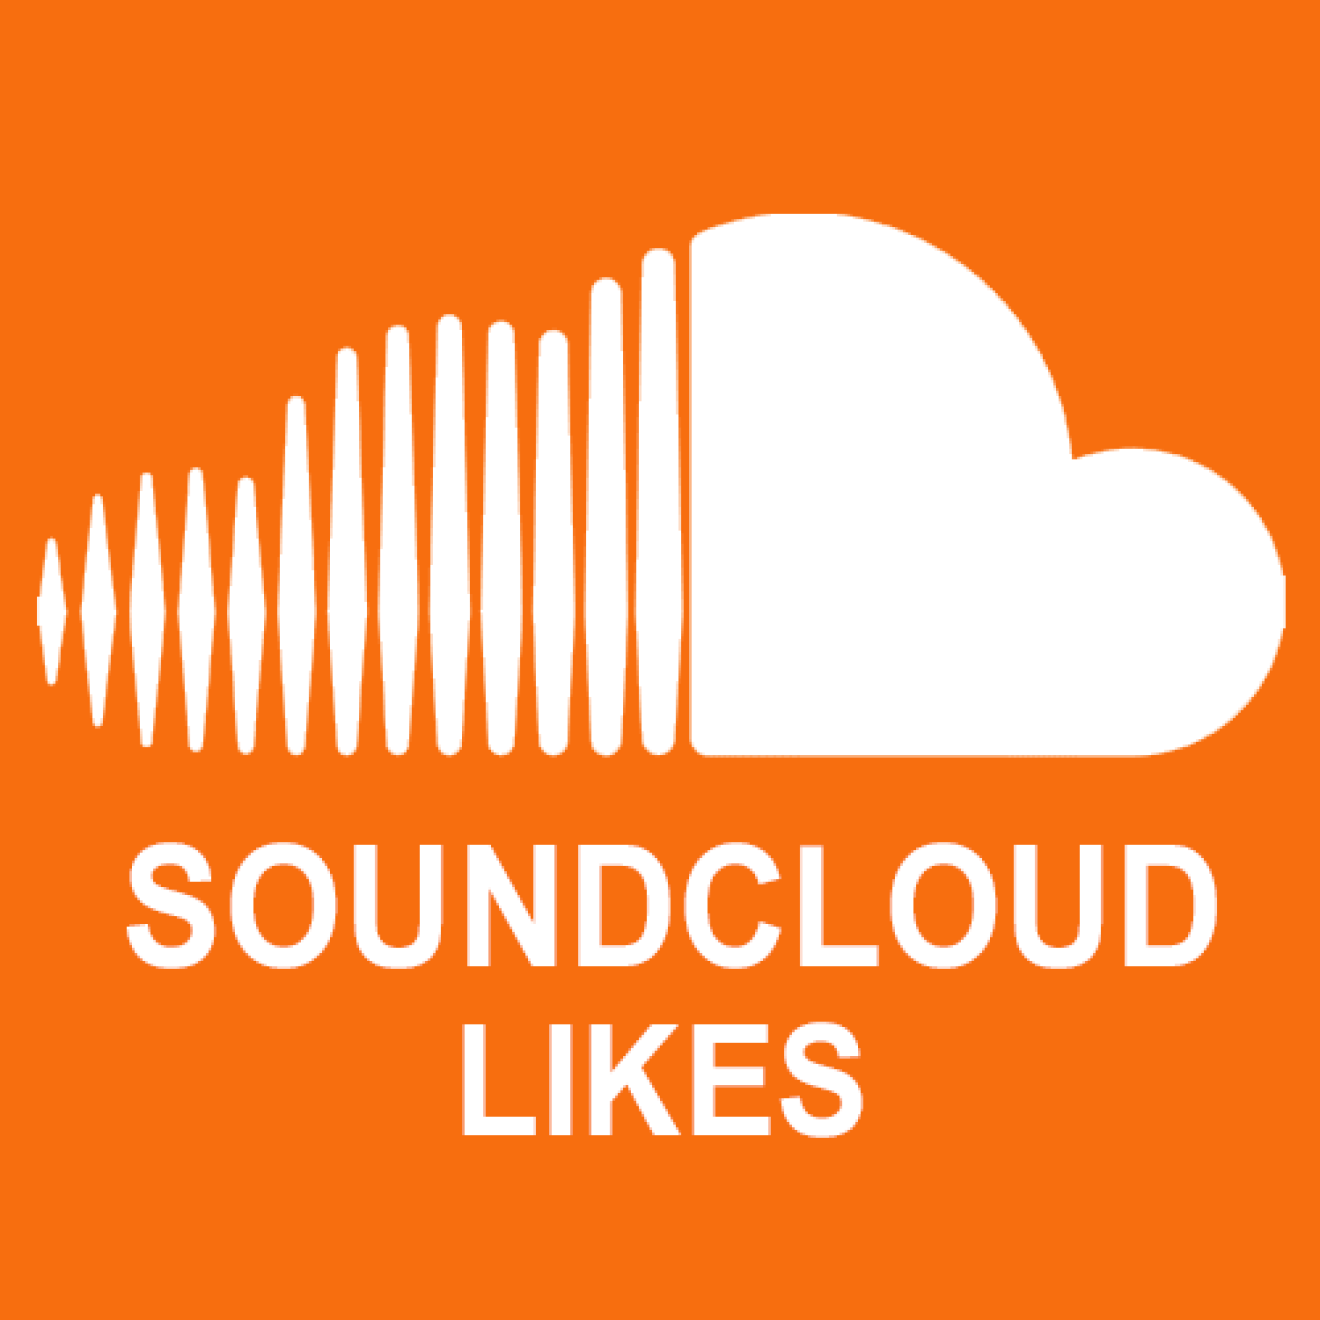 100000 Soundcloud Likes / Gefällt mir Angaben für Dich